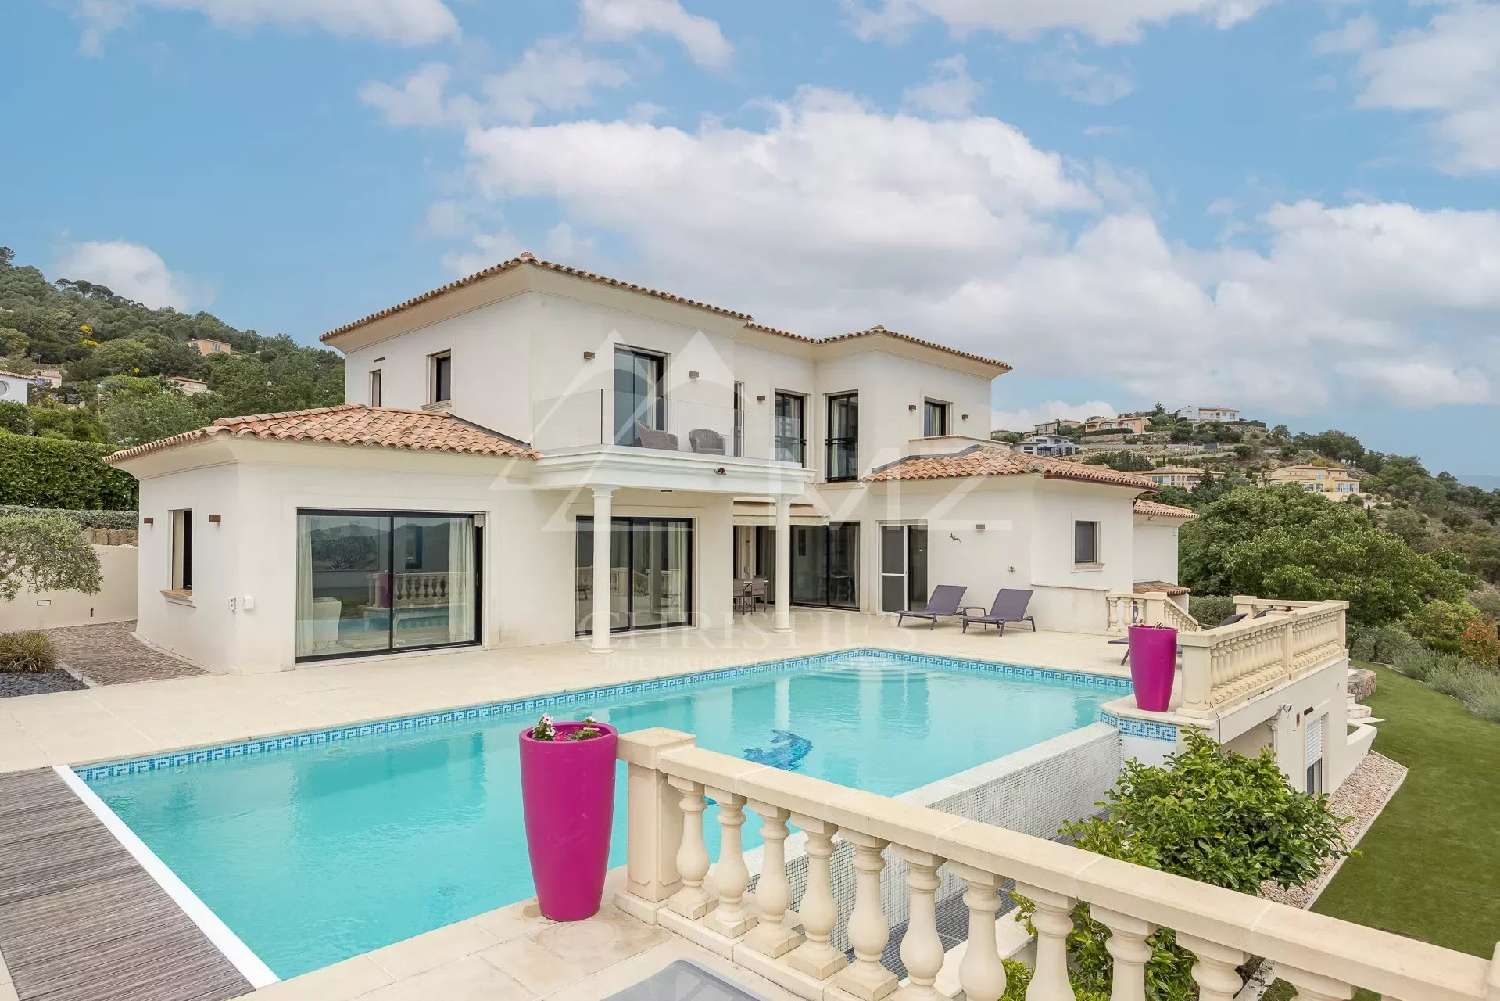  for sale villa Mandelieu-la-Napoule Alpes-Maritimes 1